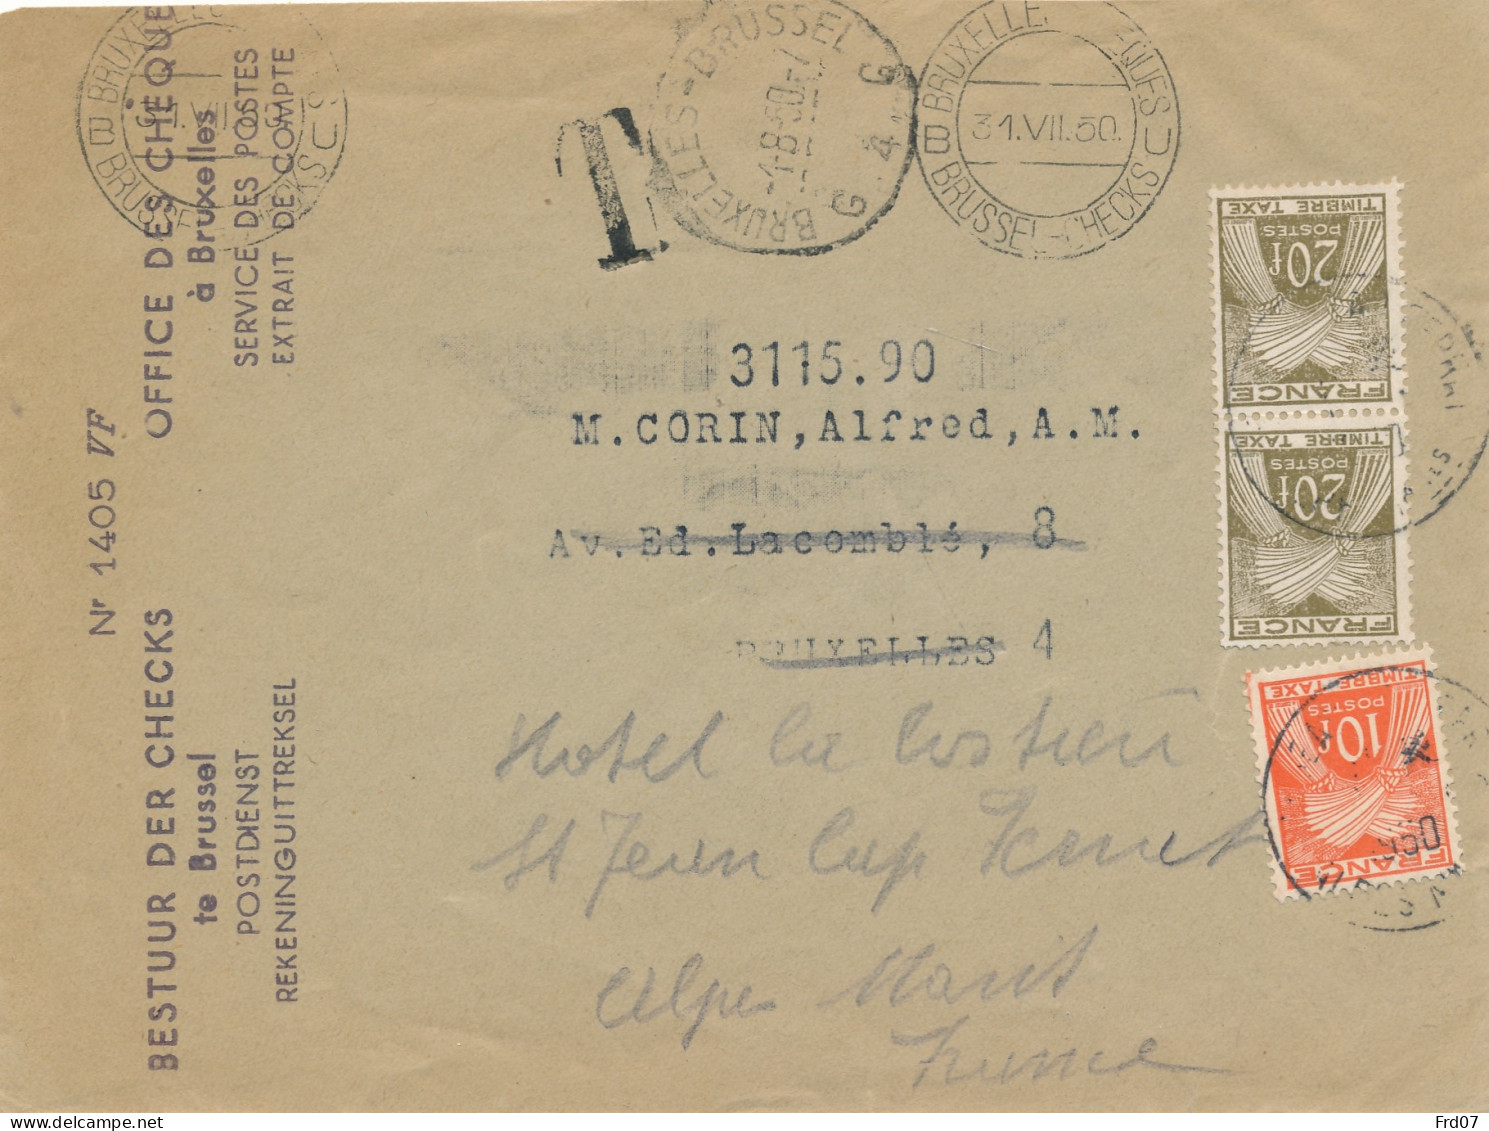 Enveloppe CCP Belge 1950 – Réexpédié Vers La France - St Jean Cap Ferrat – Taxée 50 Cent - 1859-1959 Briefe & Dokumente